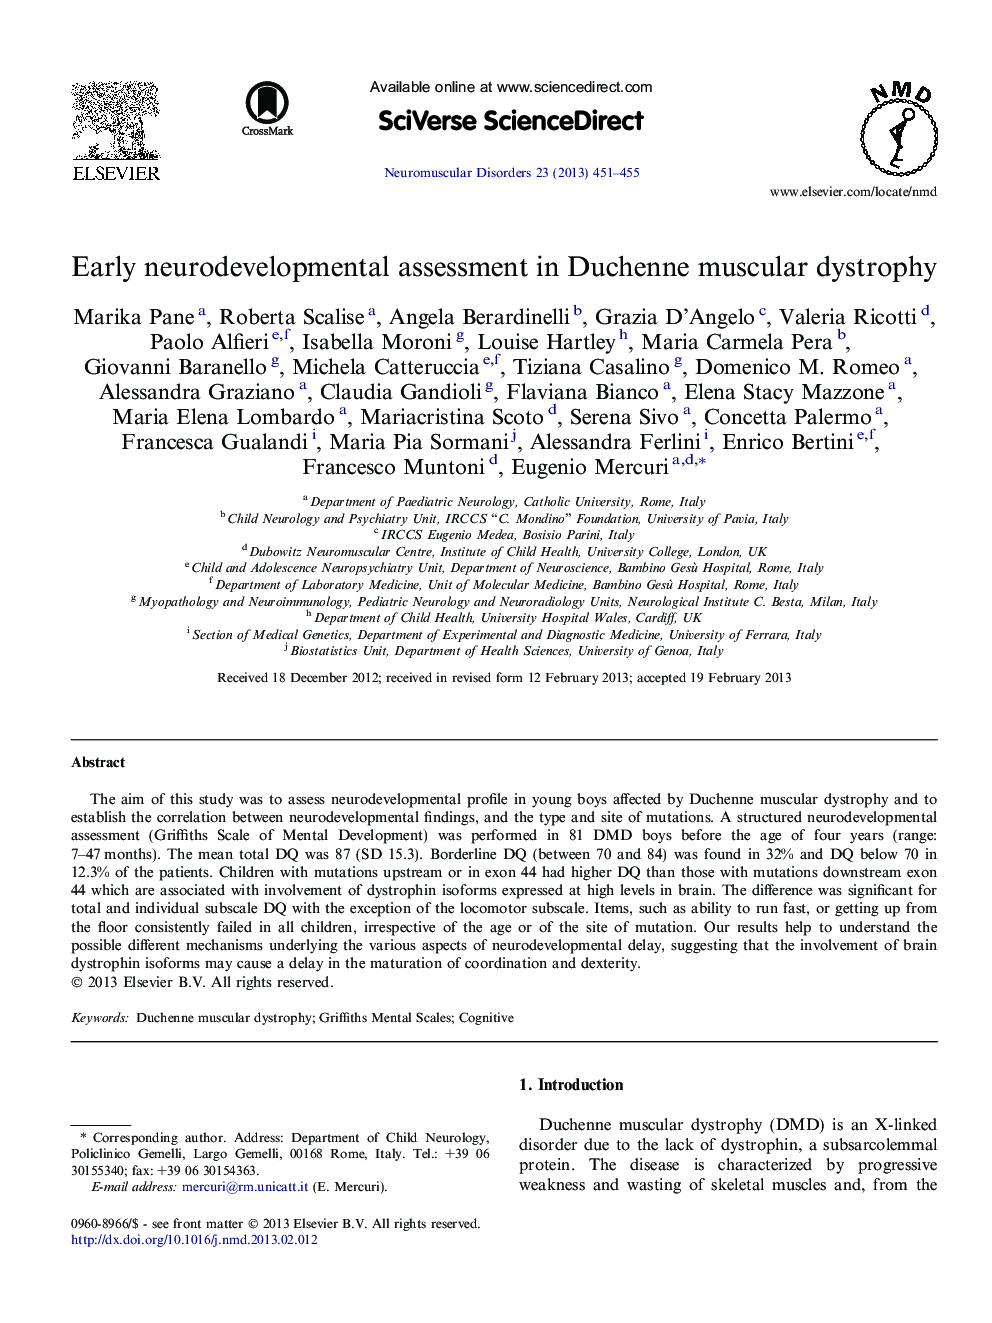 Early neurodevelopmental assessment in Duchenne muscular dystrophy